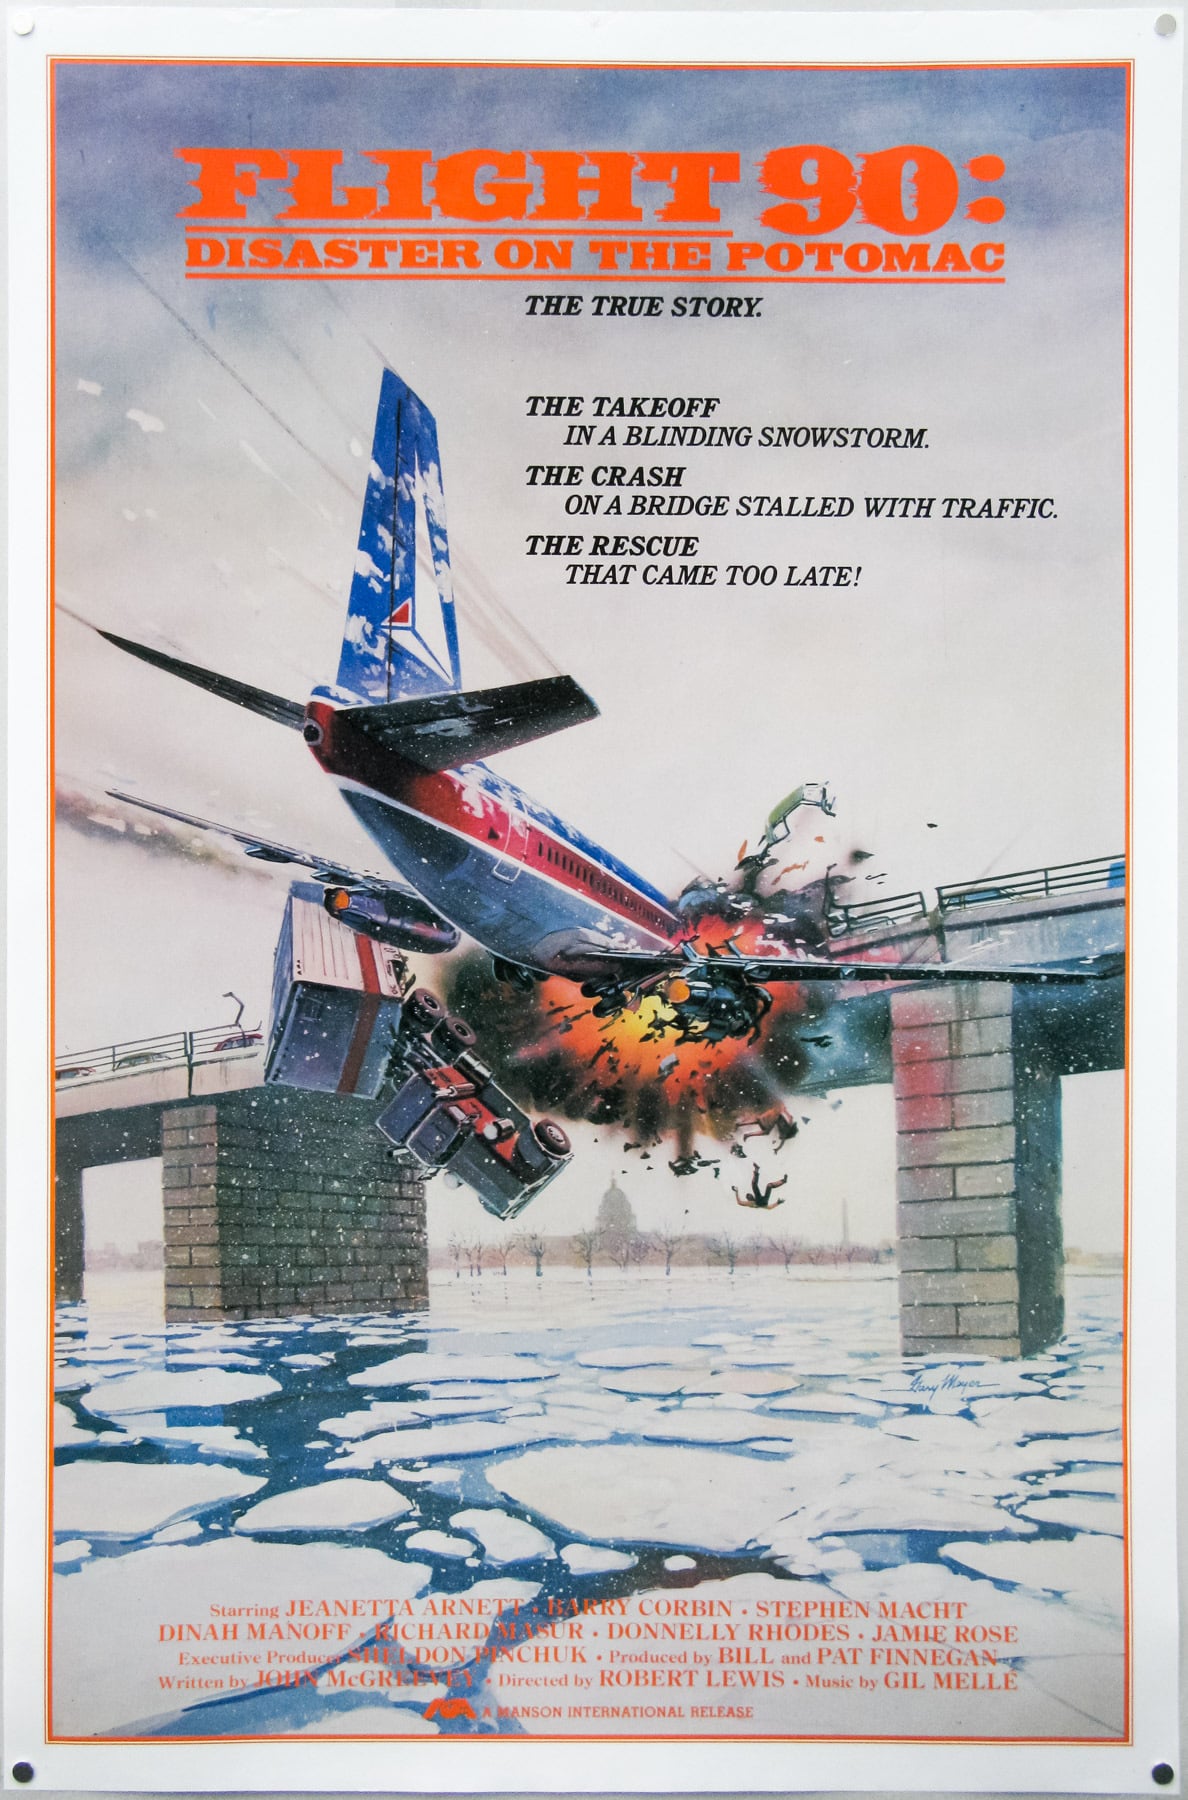 Katastrophe auf dem Potomac – Absturz in die eisigen Fluten (1984)